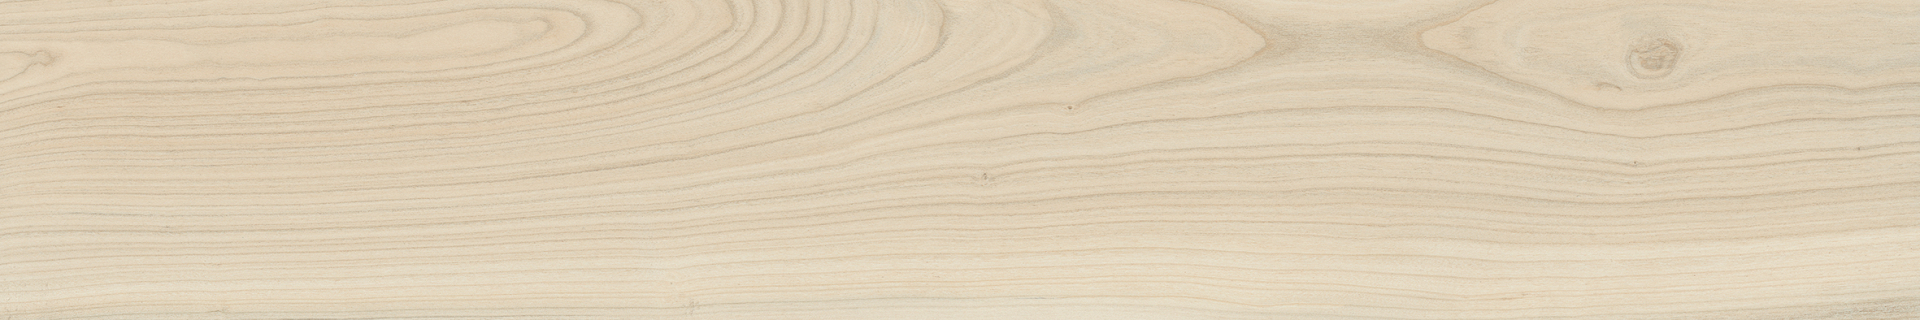 Керамогранит Italon Room Floor Project Beige Wood 20x120 см